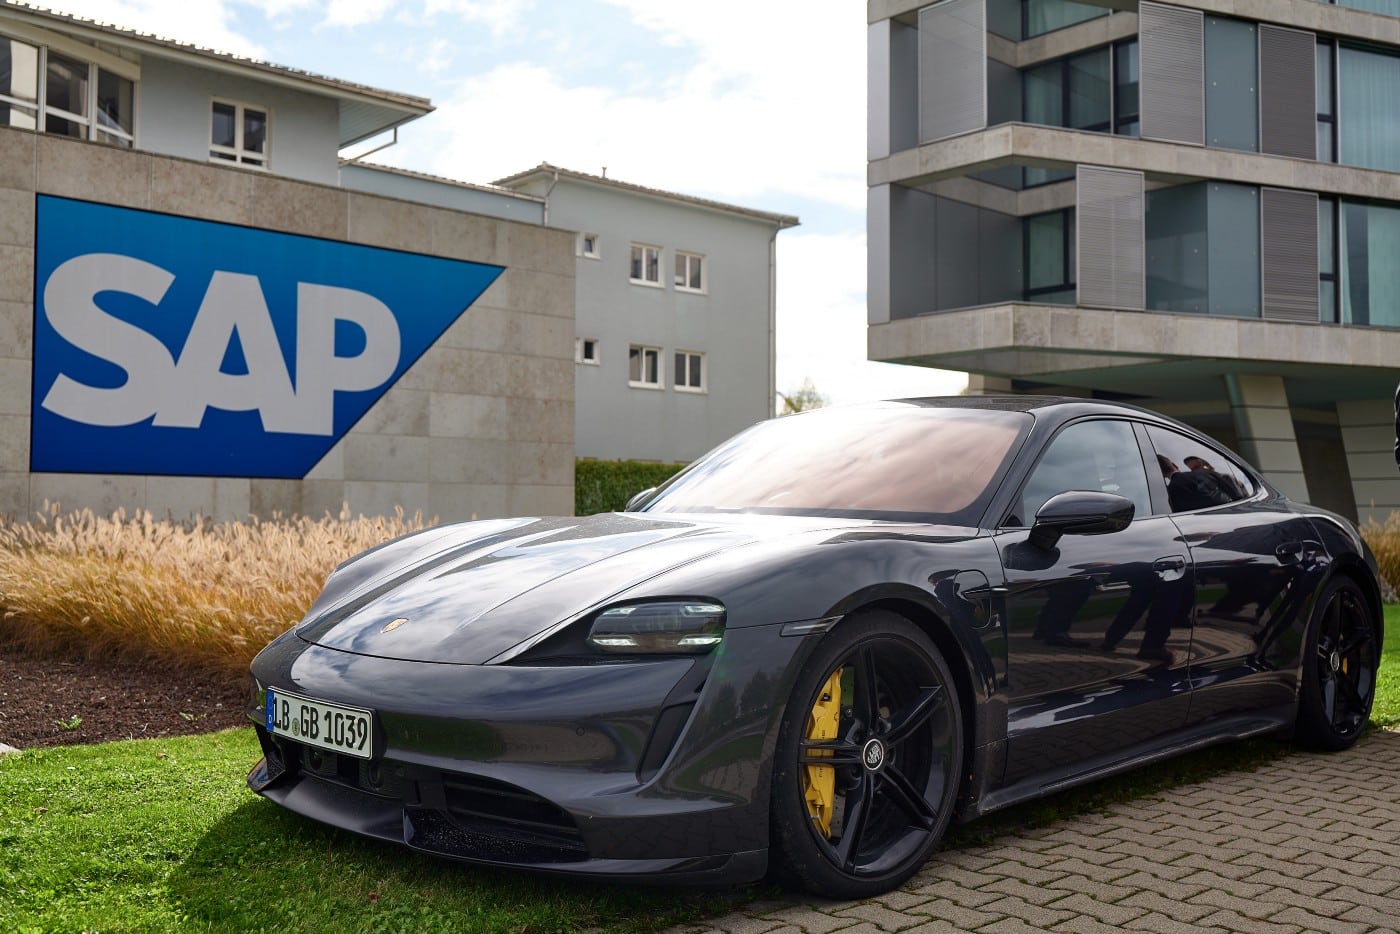 SAP 본사 건물 앞에 주차한 포르쉐 자동차